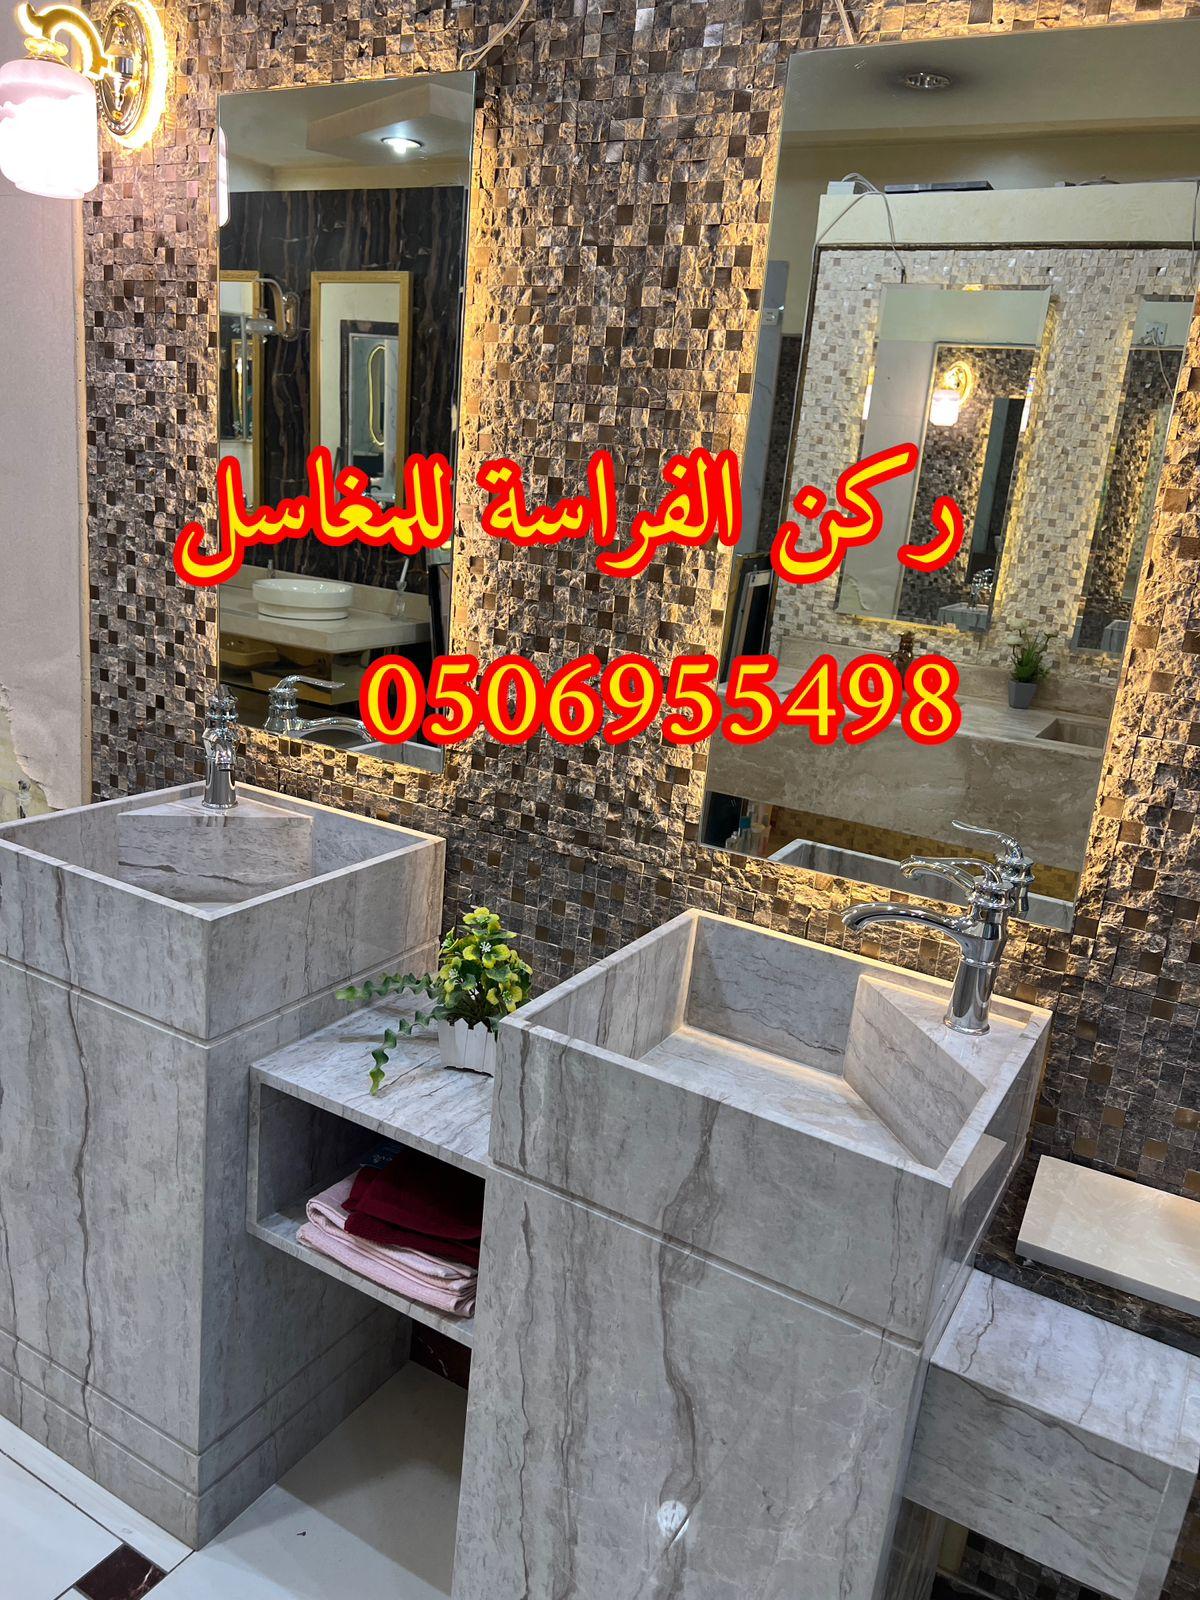 الرياض - اشكال مغاسل رخام حديثة في الرياض,0506955498 392695765